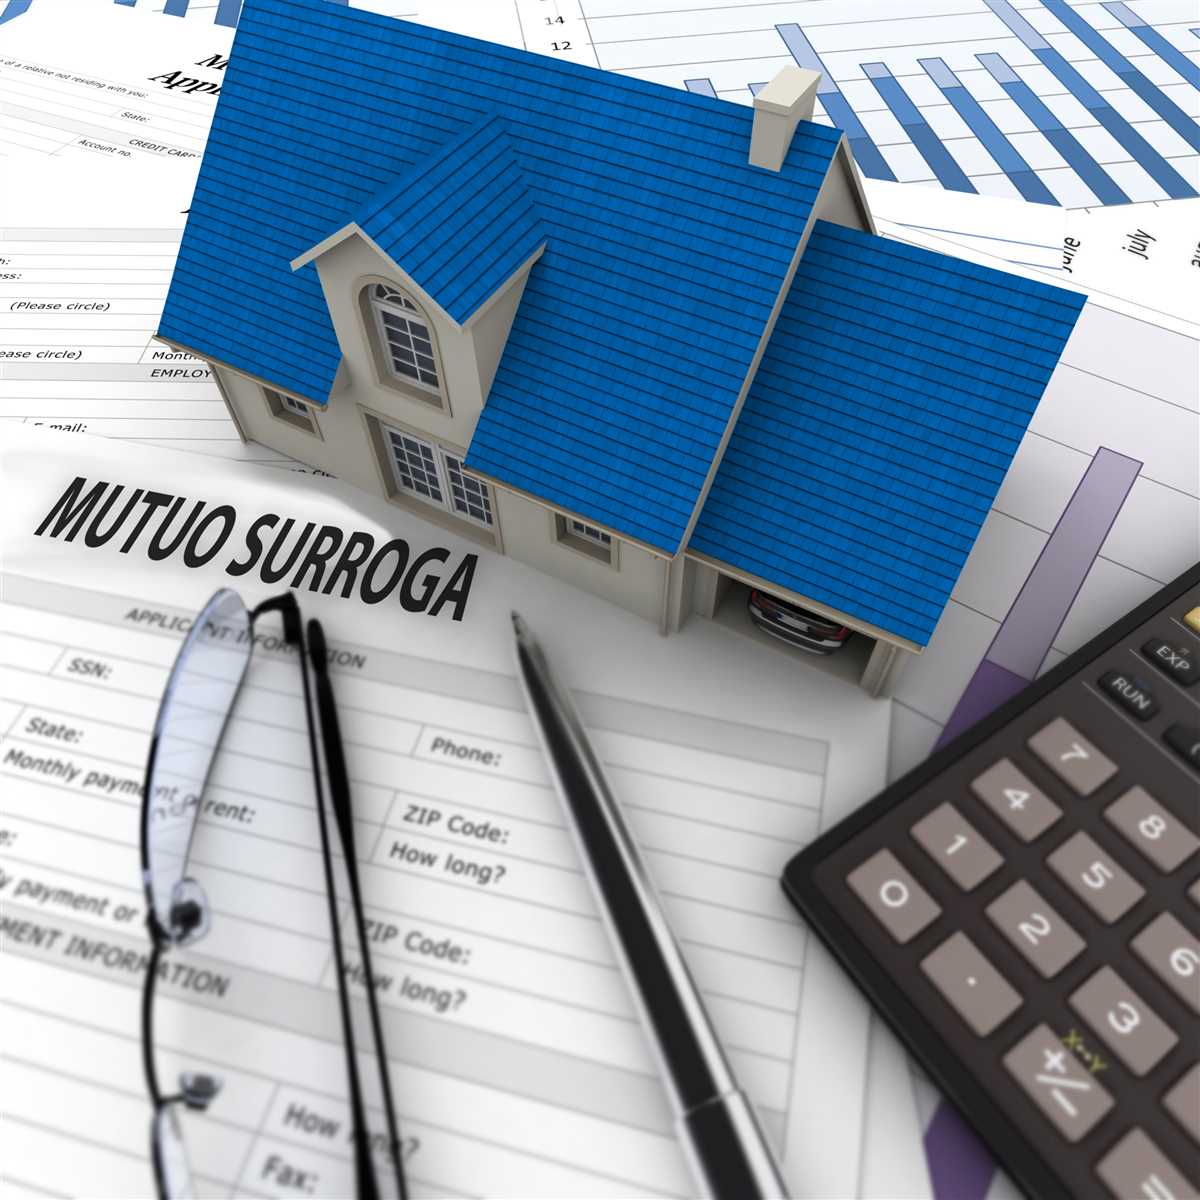 Cresce il mercato dei mutui: surroghe in forte aumento